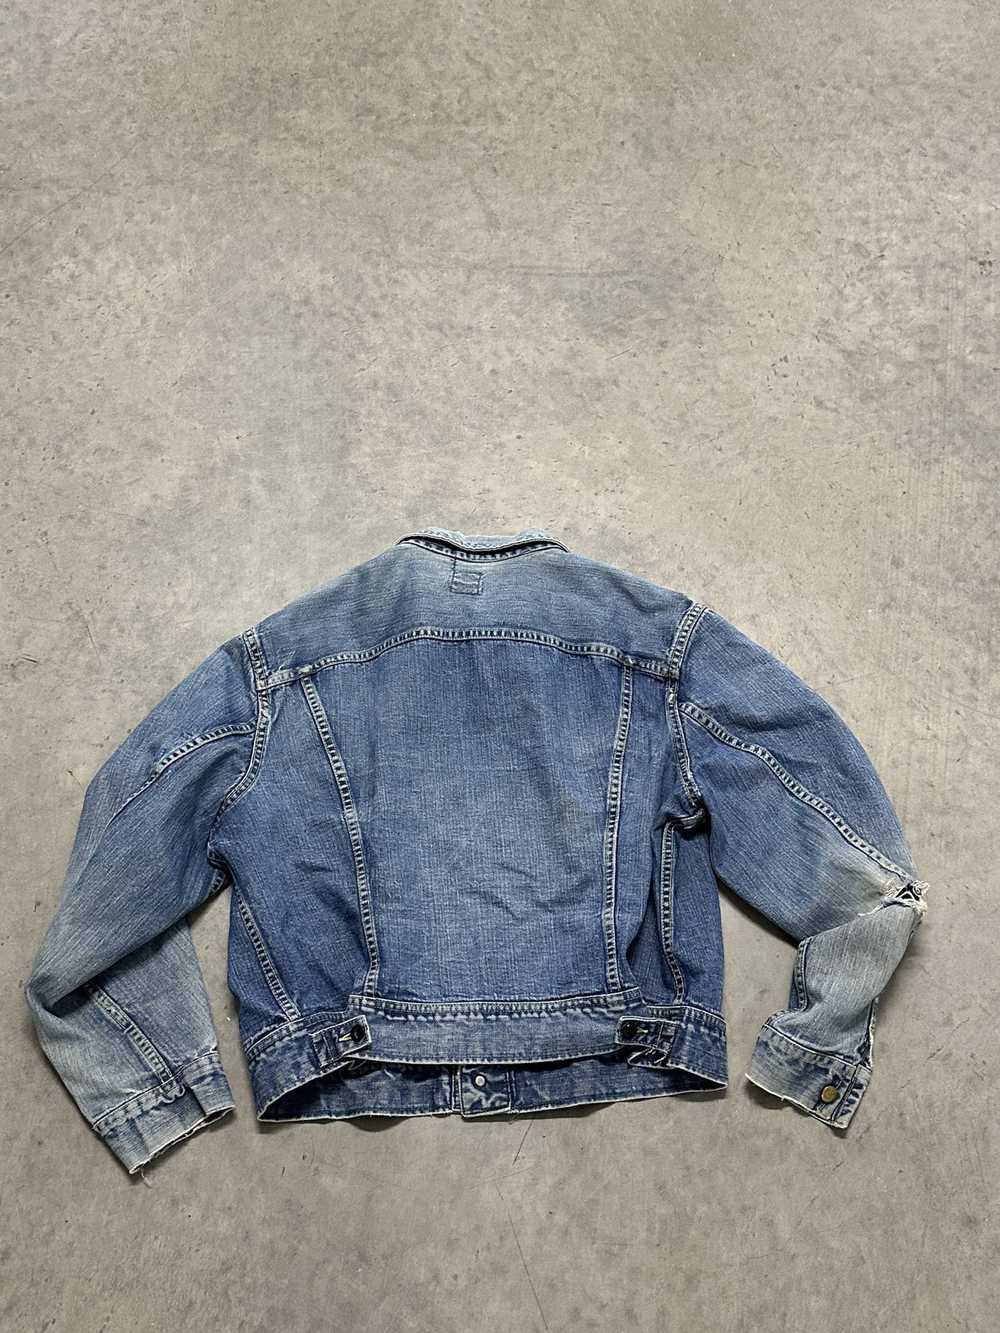 Lee × Streetwear × Vintage 70s Lee Denim Jacket - image 2